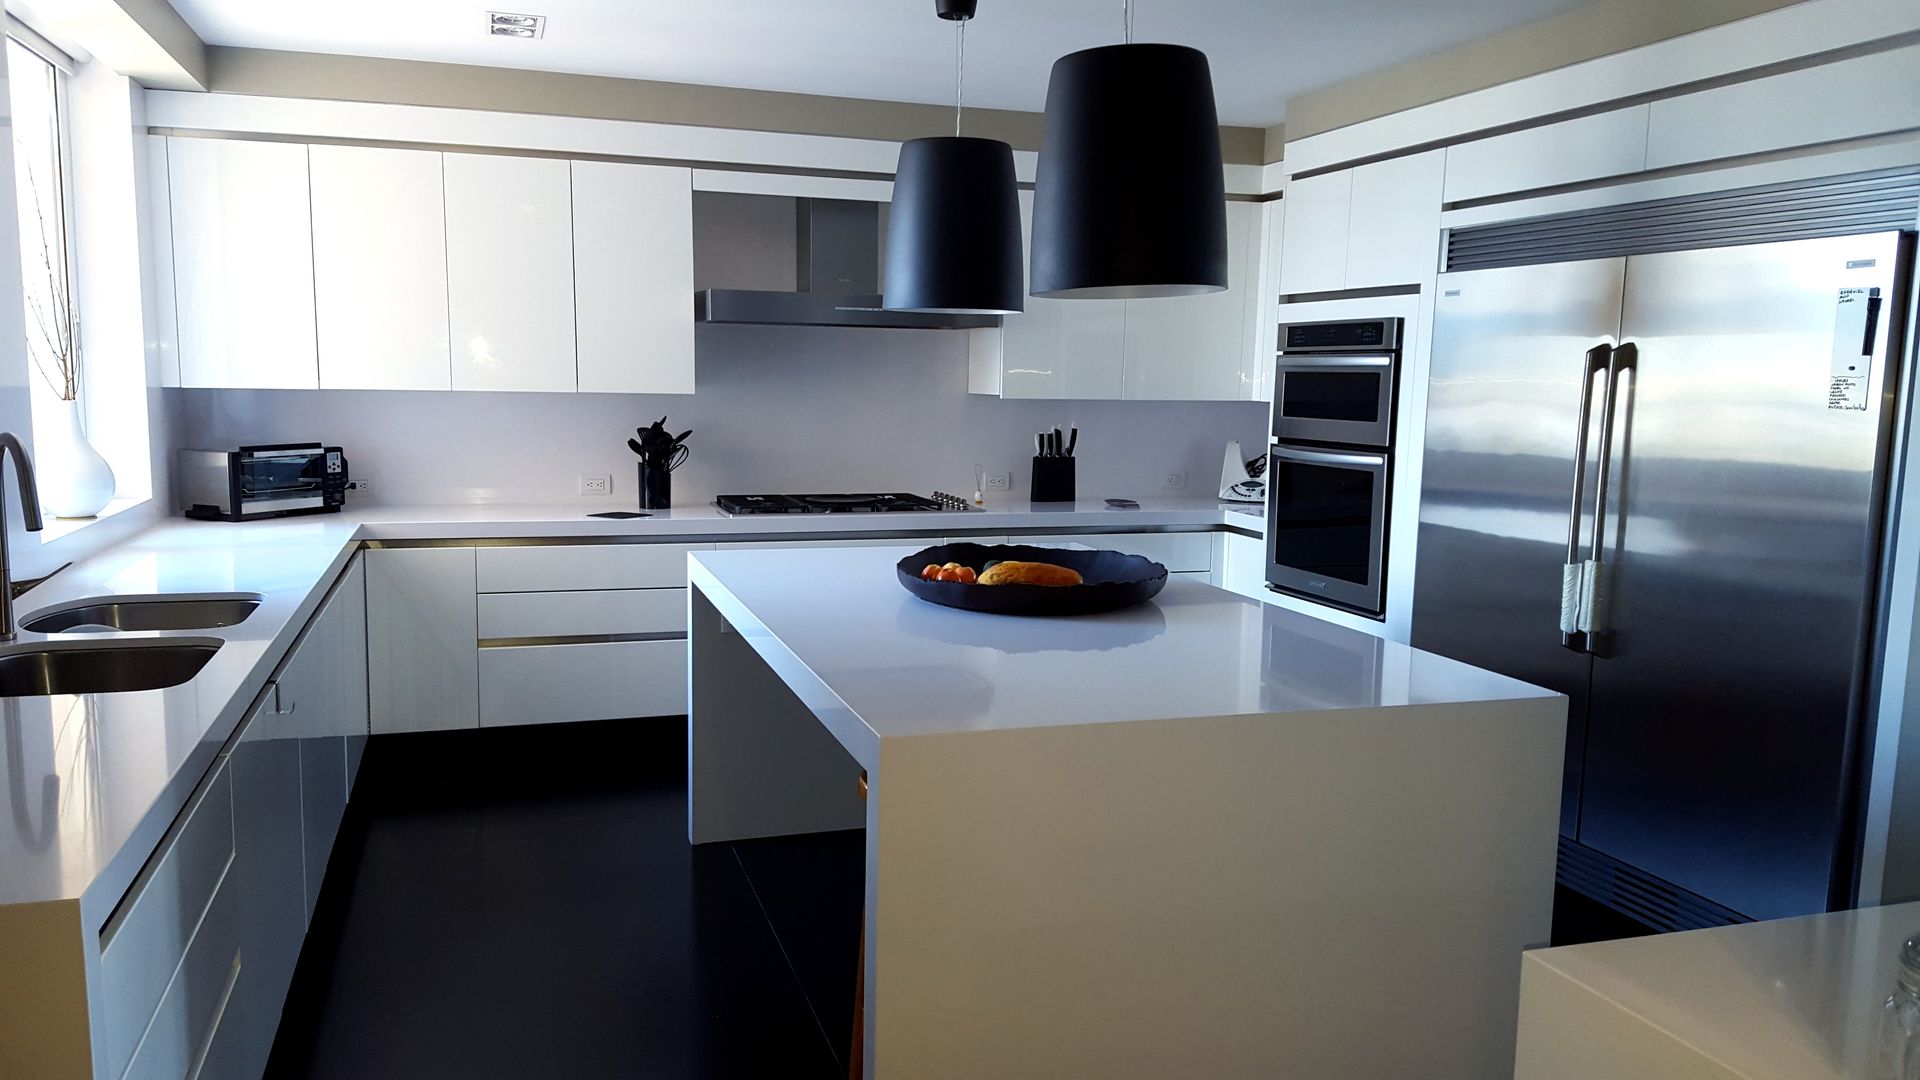 Barra en Silestone Cocinas y Muebles Flores Cocinas de estilo minimalista Sintético Marrón Mesadas de cocina